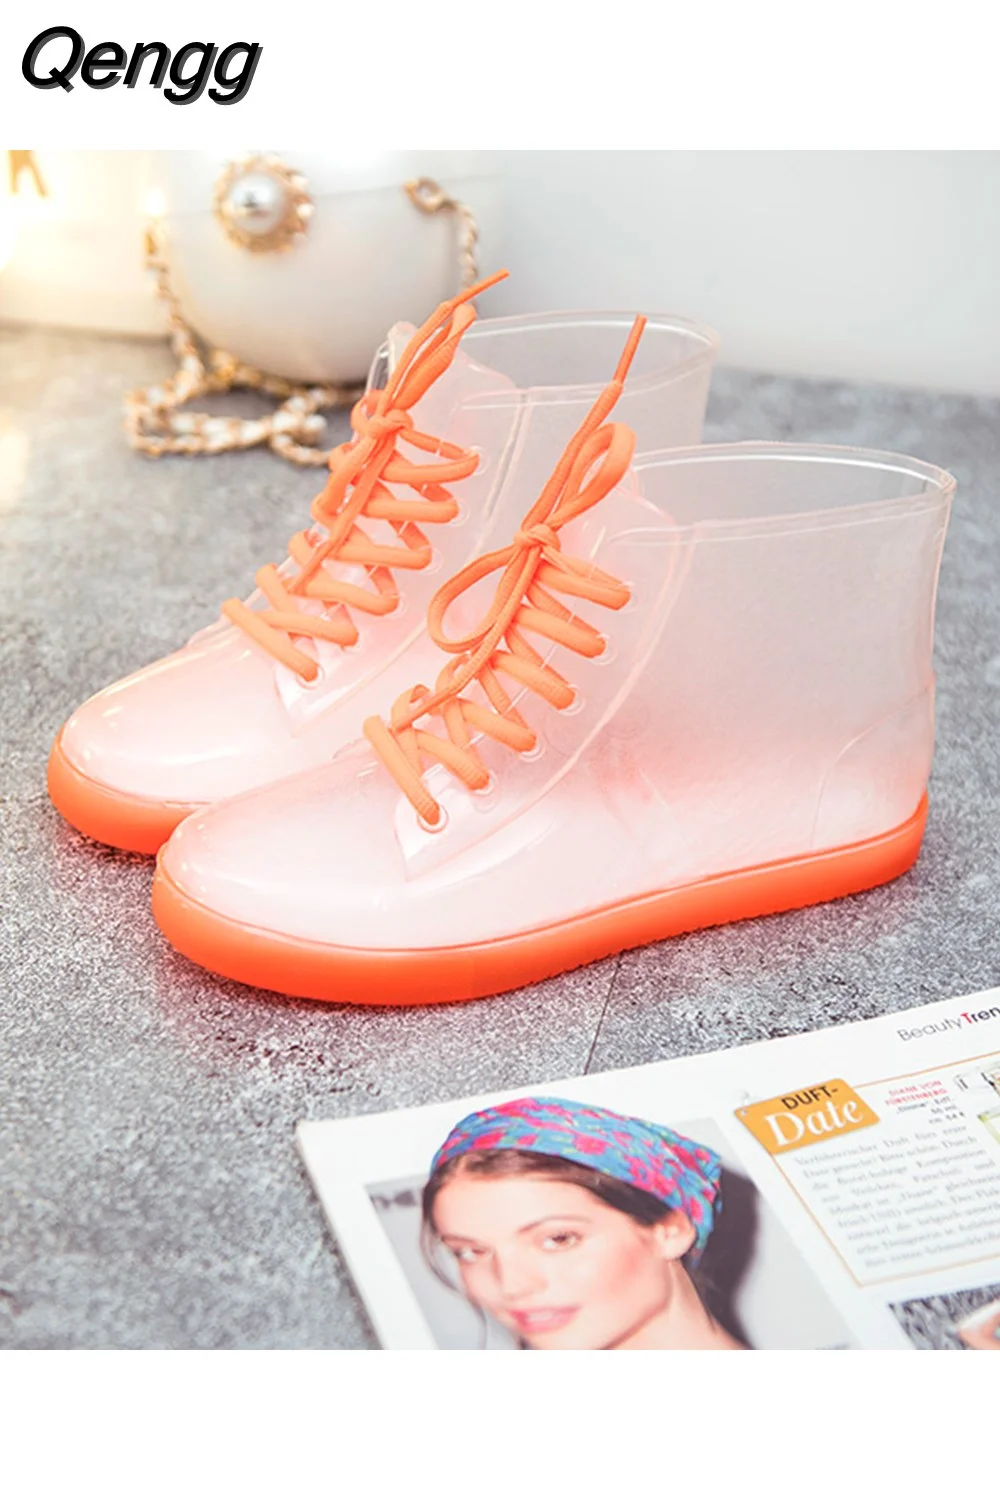 Qengg Transparent Anti-Slip Fashion Waterproof Shoes Rainshoes Rain Boots Shoe Cover Woolen Cotton Rubber Boots Female Short